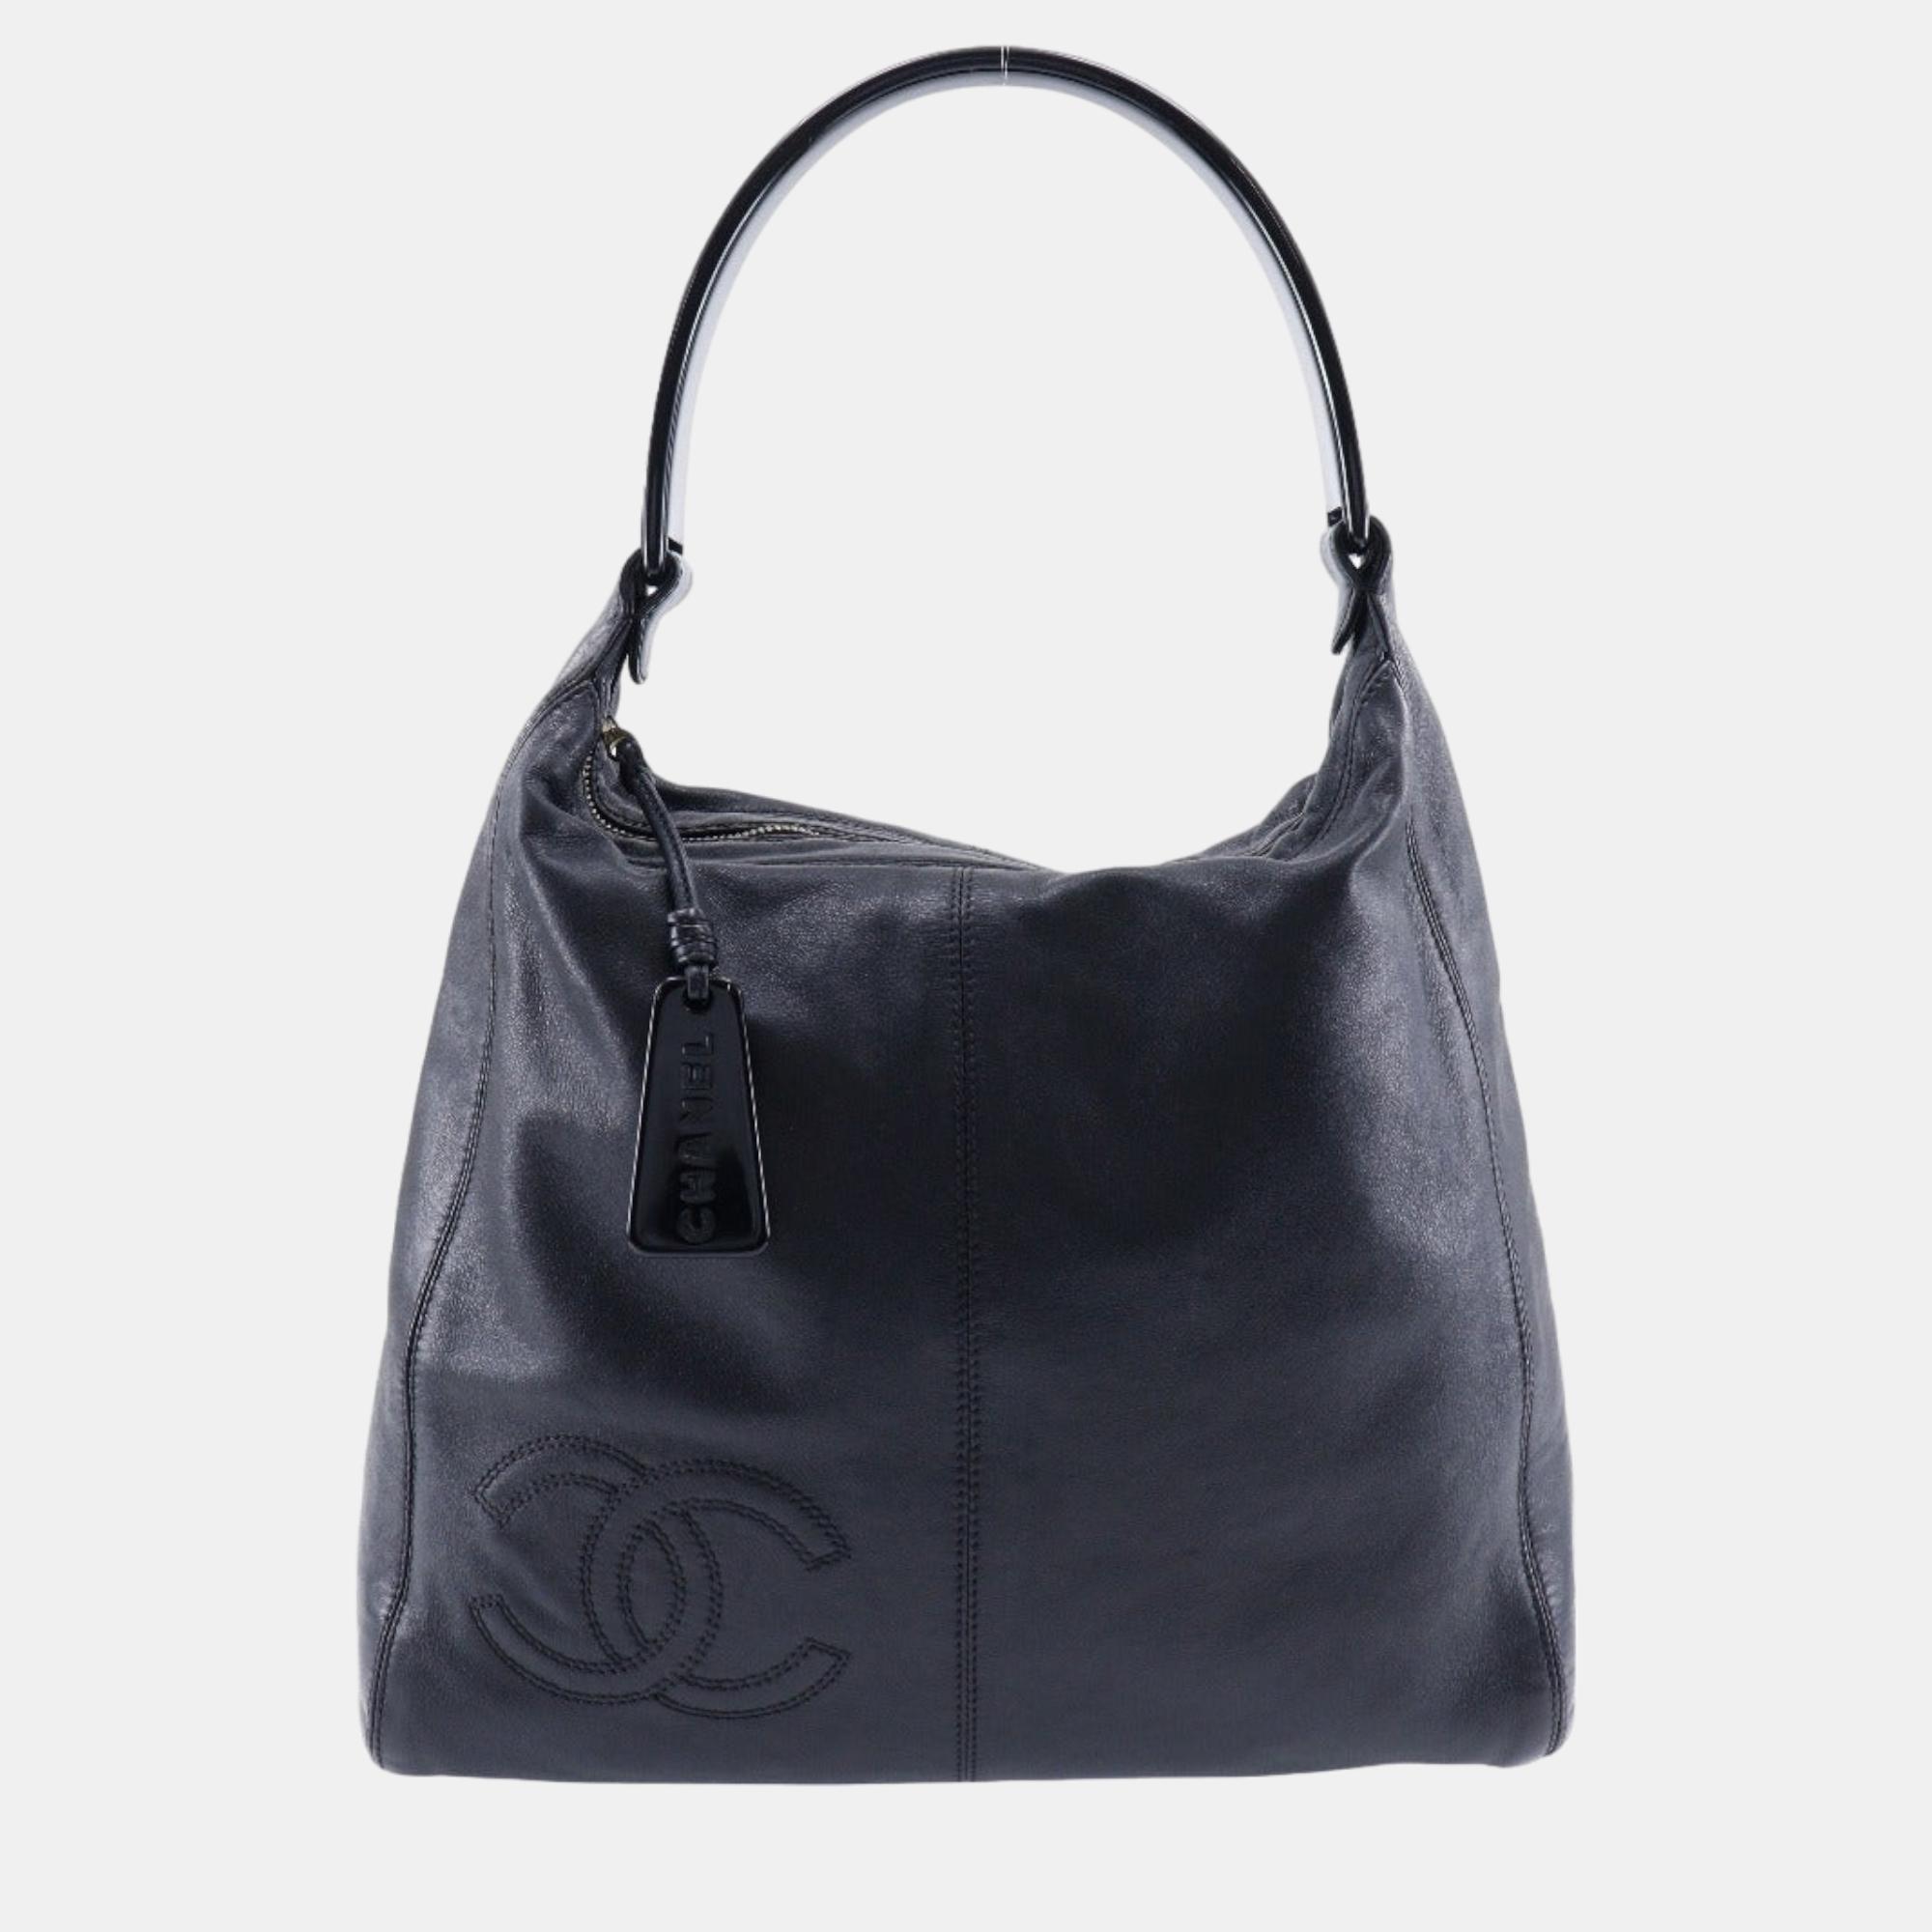 Chanel black leather vintage cc logo hobo large shoulder bag